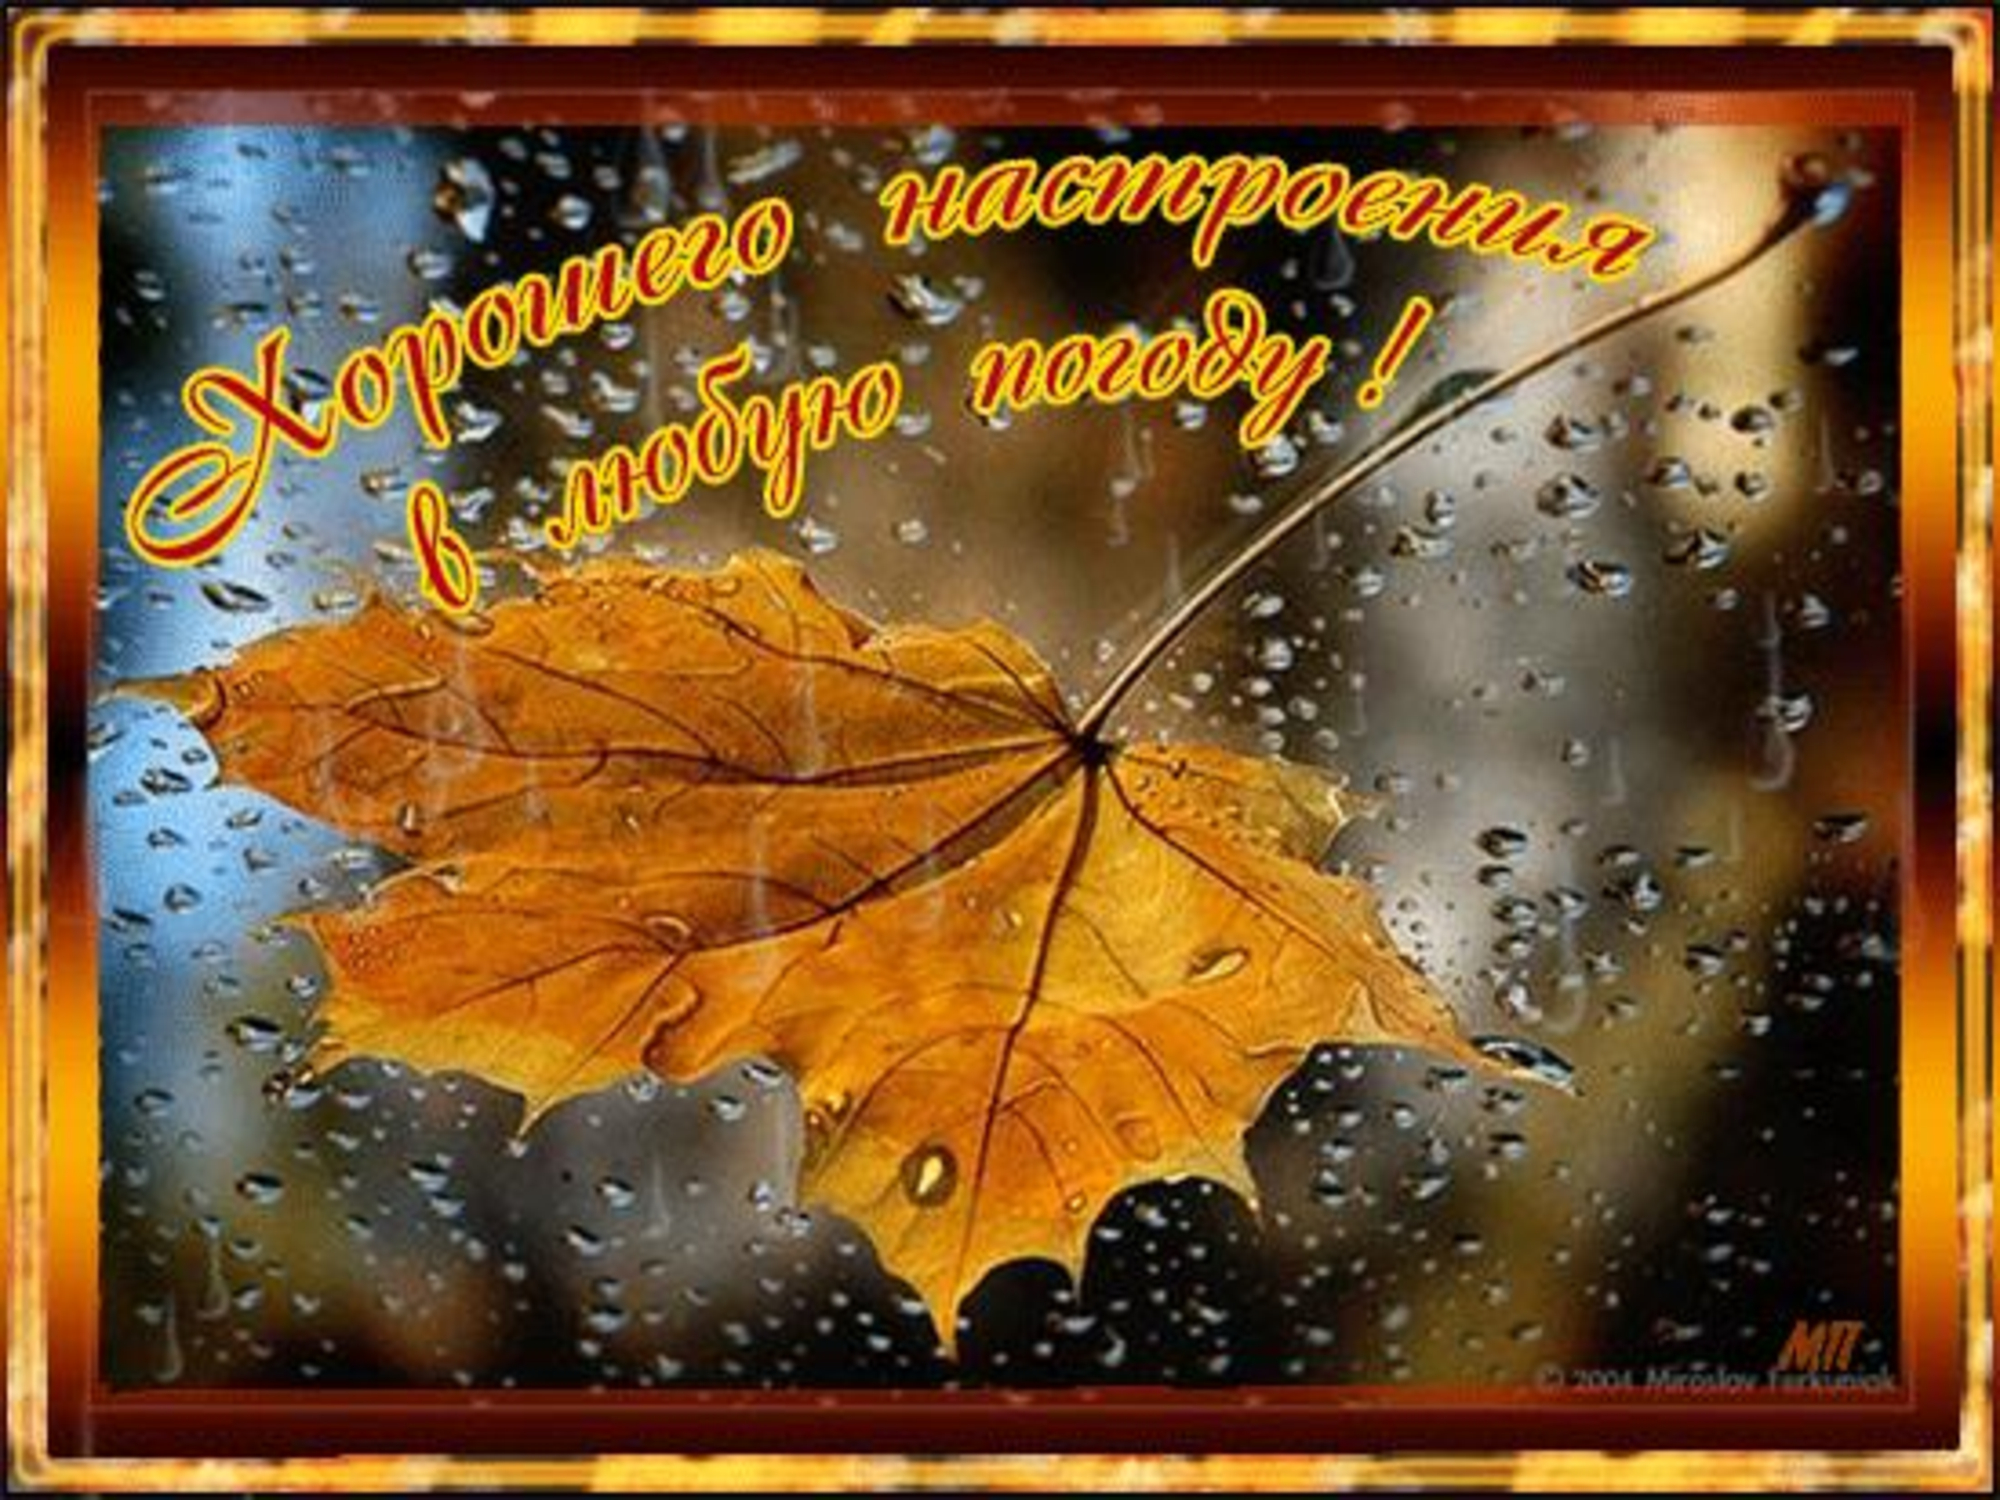 Сентябрь кончаться. Осеннего настроения в любую погоду. Открытки хорошего настроения в любую погоду осенью. Хорошего настроения дождливой осенью. Открытка хорошего настроения в любую погоду осенняя.